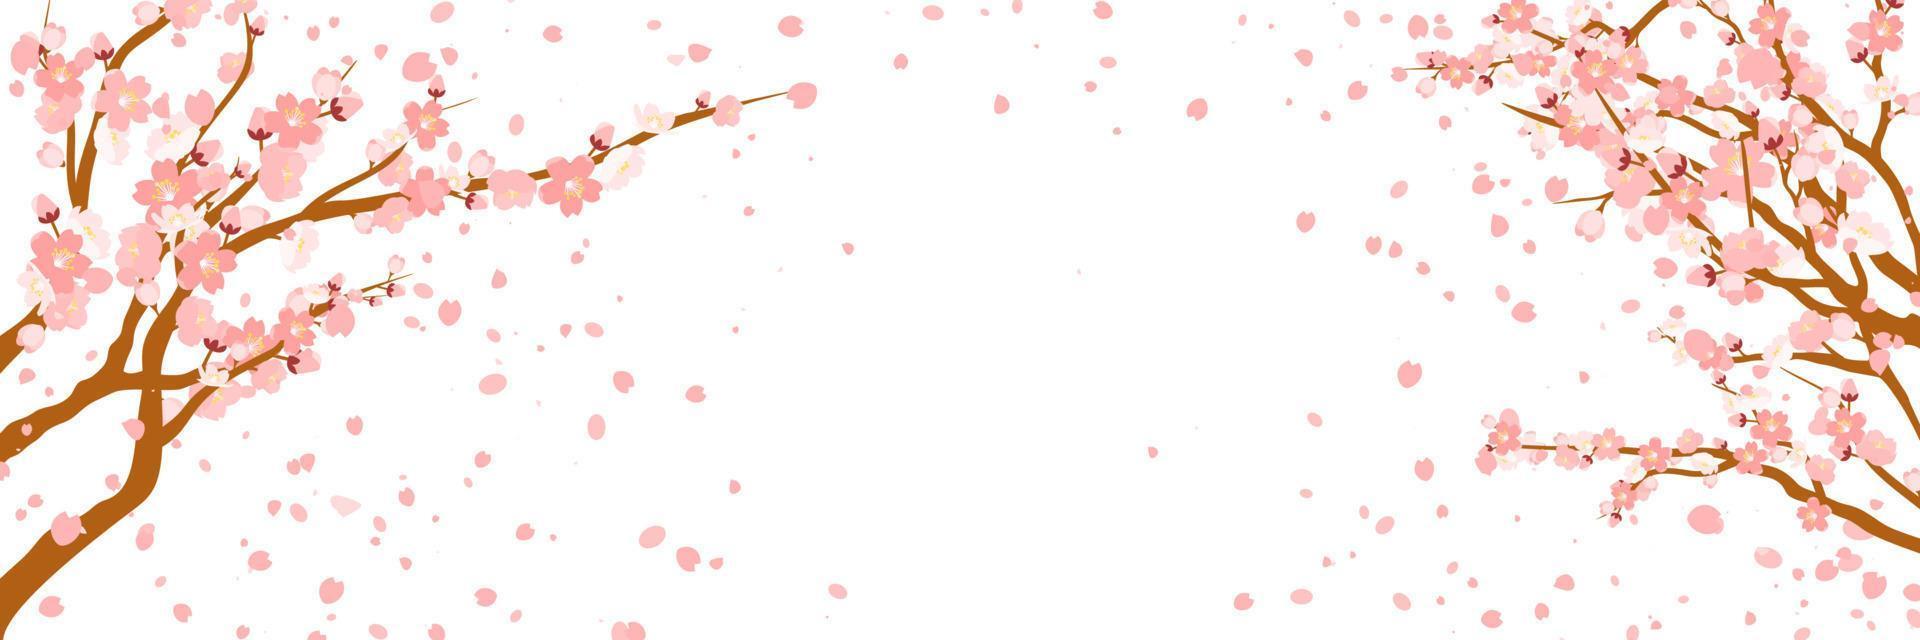 ramos com flores cor de rosa e botões de cereja. sakura. pétalas voando ao vento. isolado no fundo branco. ilustração vetorial. vetor